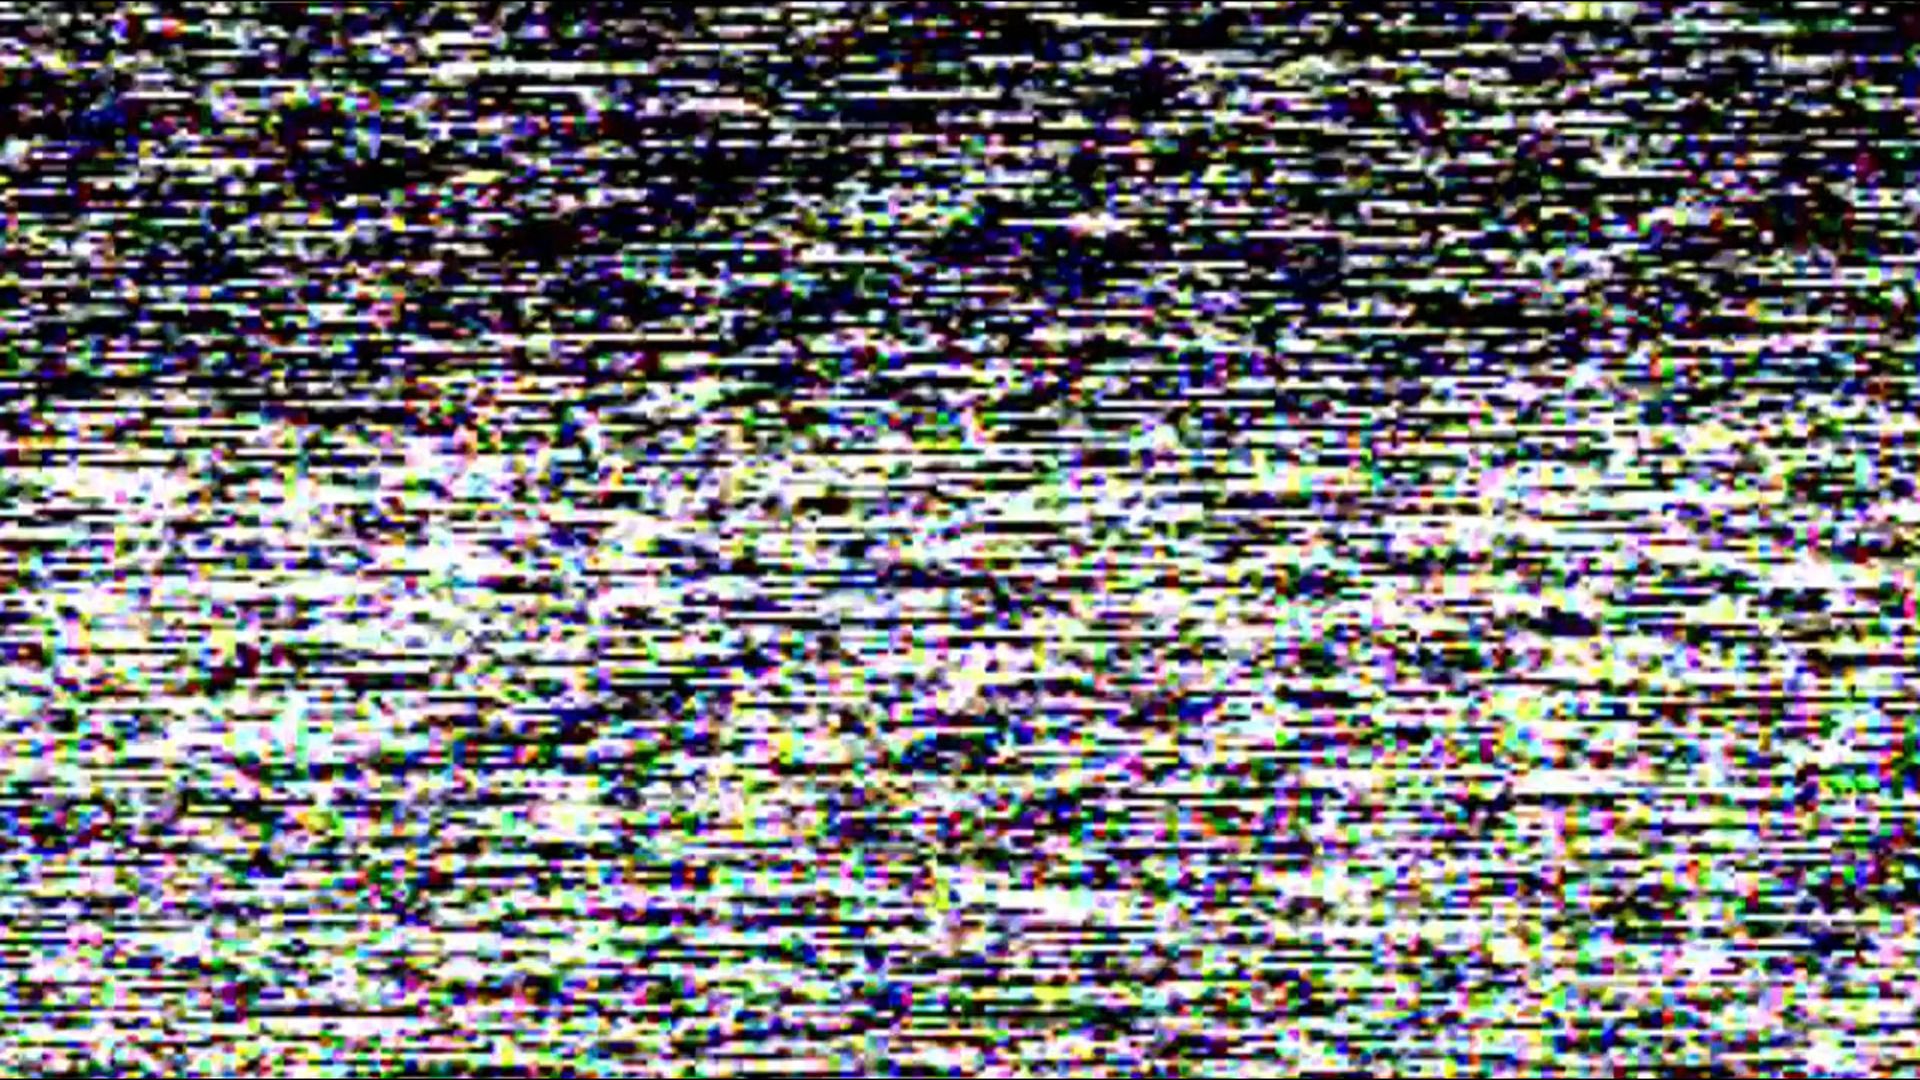 1920x1080 glitch art static wallpaper JPG 989 kB. Mocah